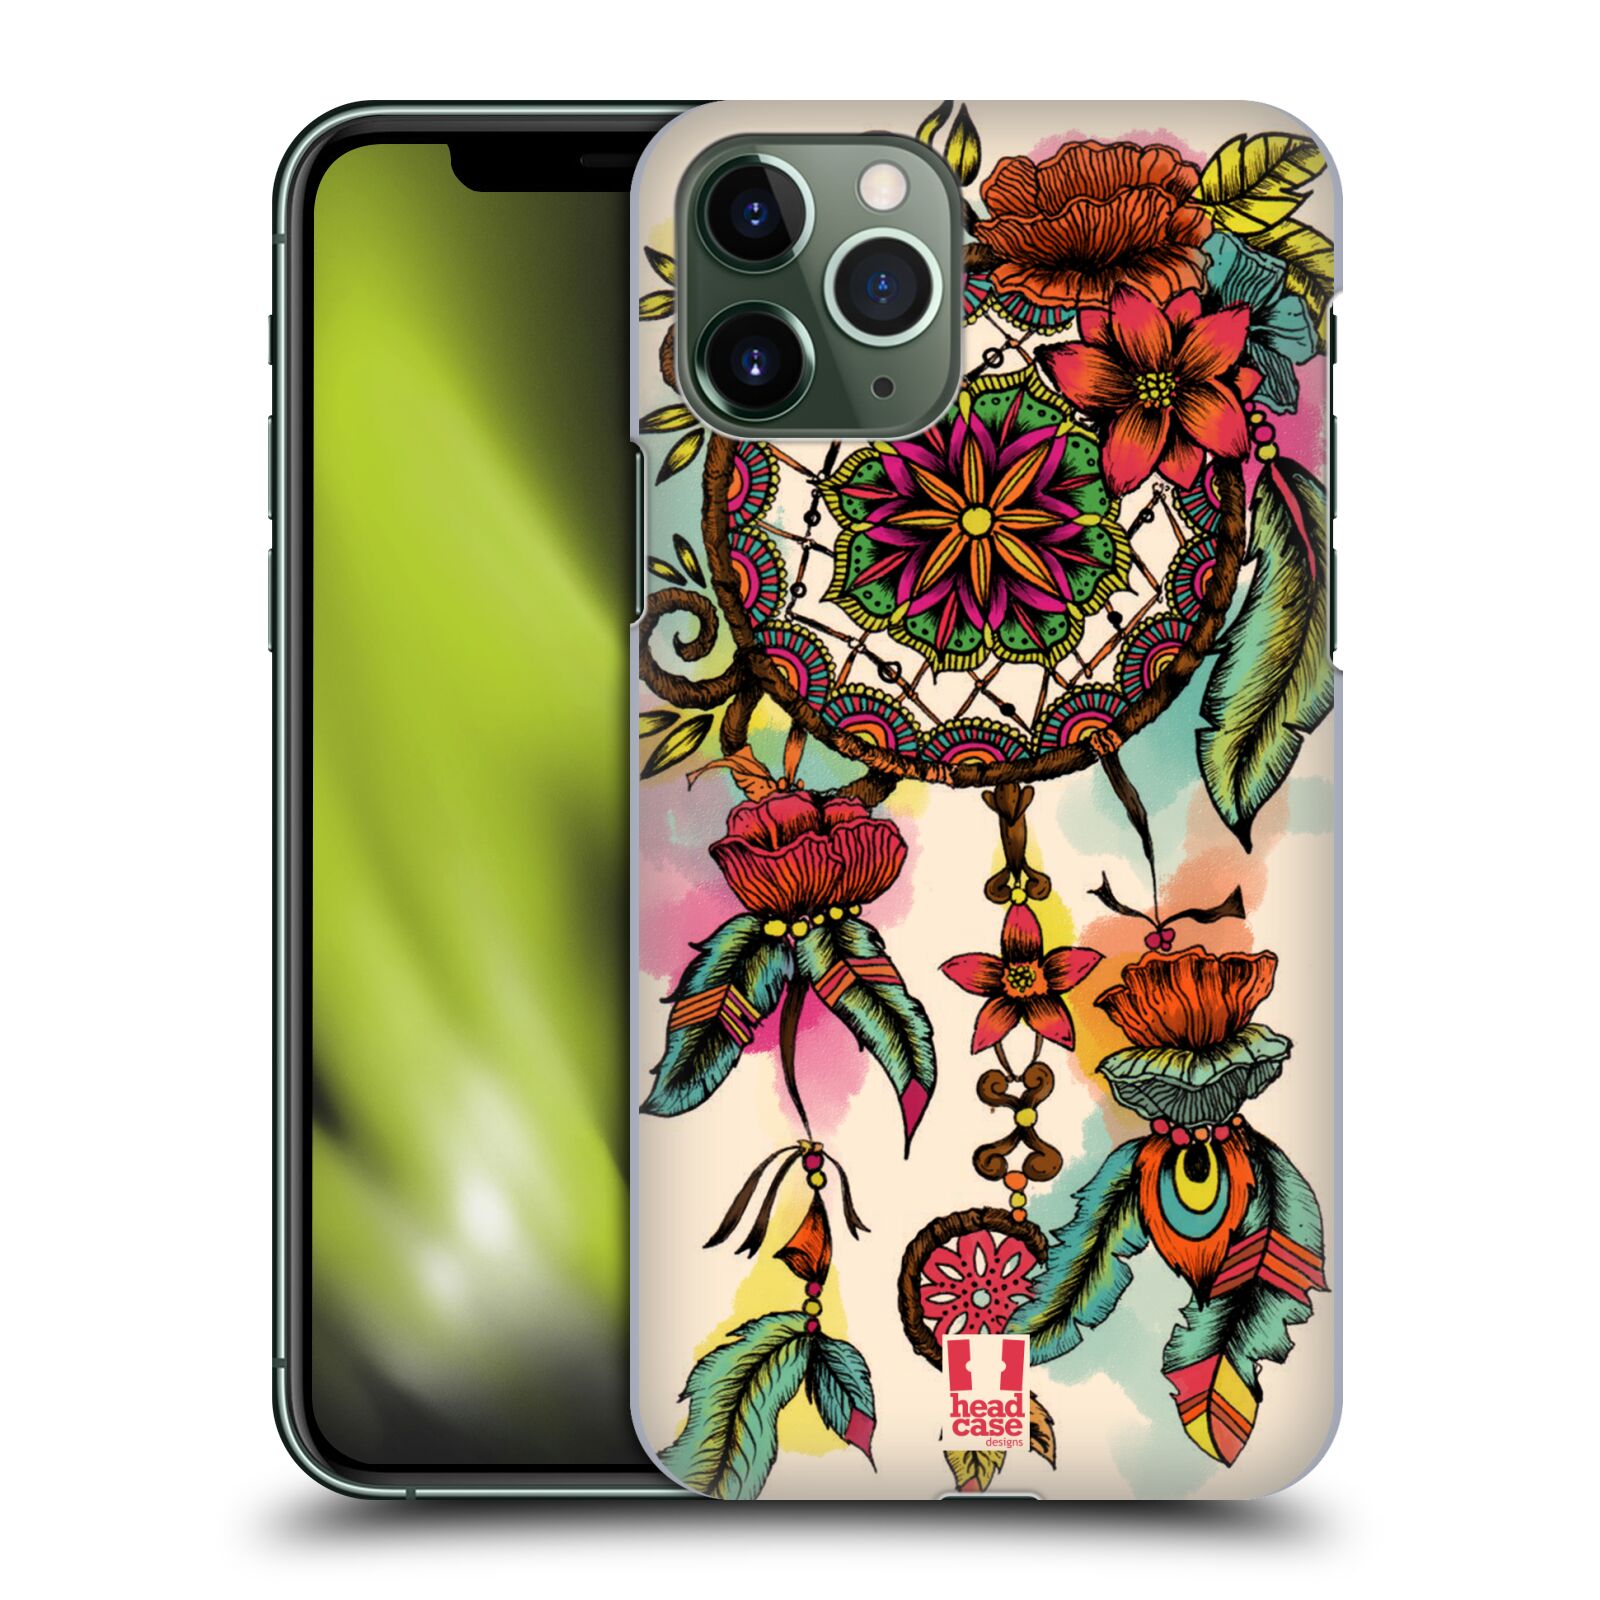 Pouzdro na mobil Apple Iphone 11 PRO - HEAD CASE - vzor Květy lapač snů FLORID